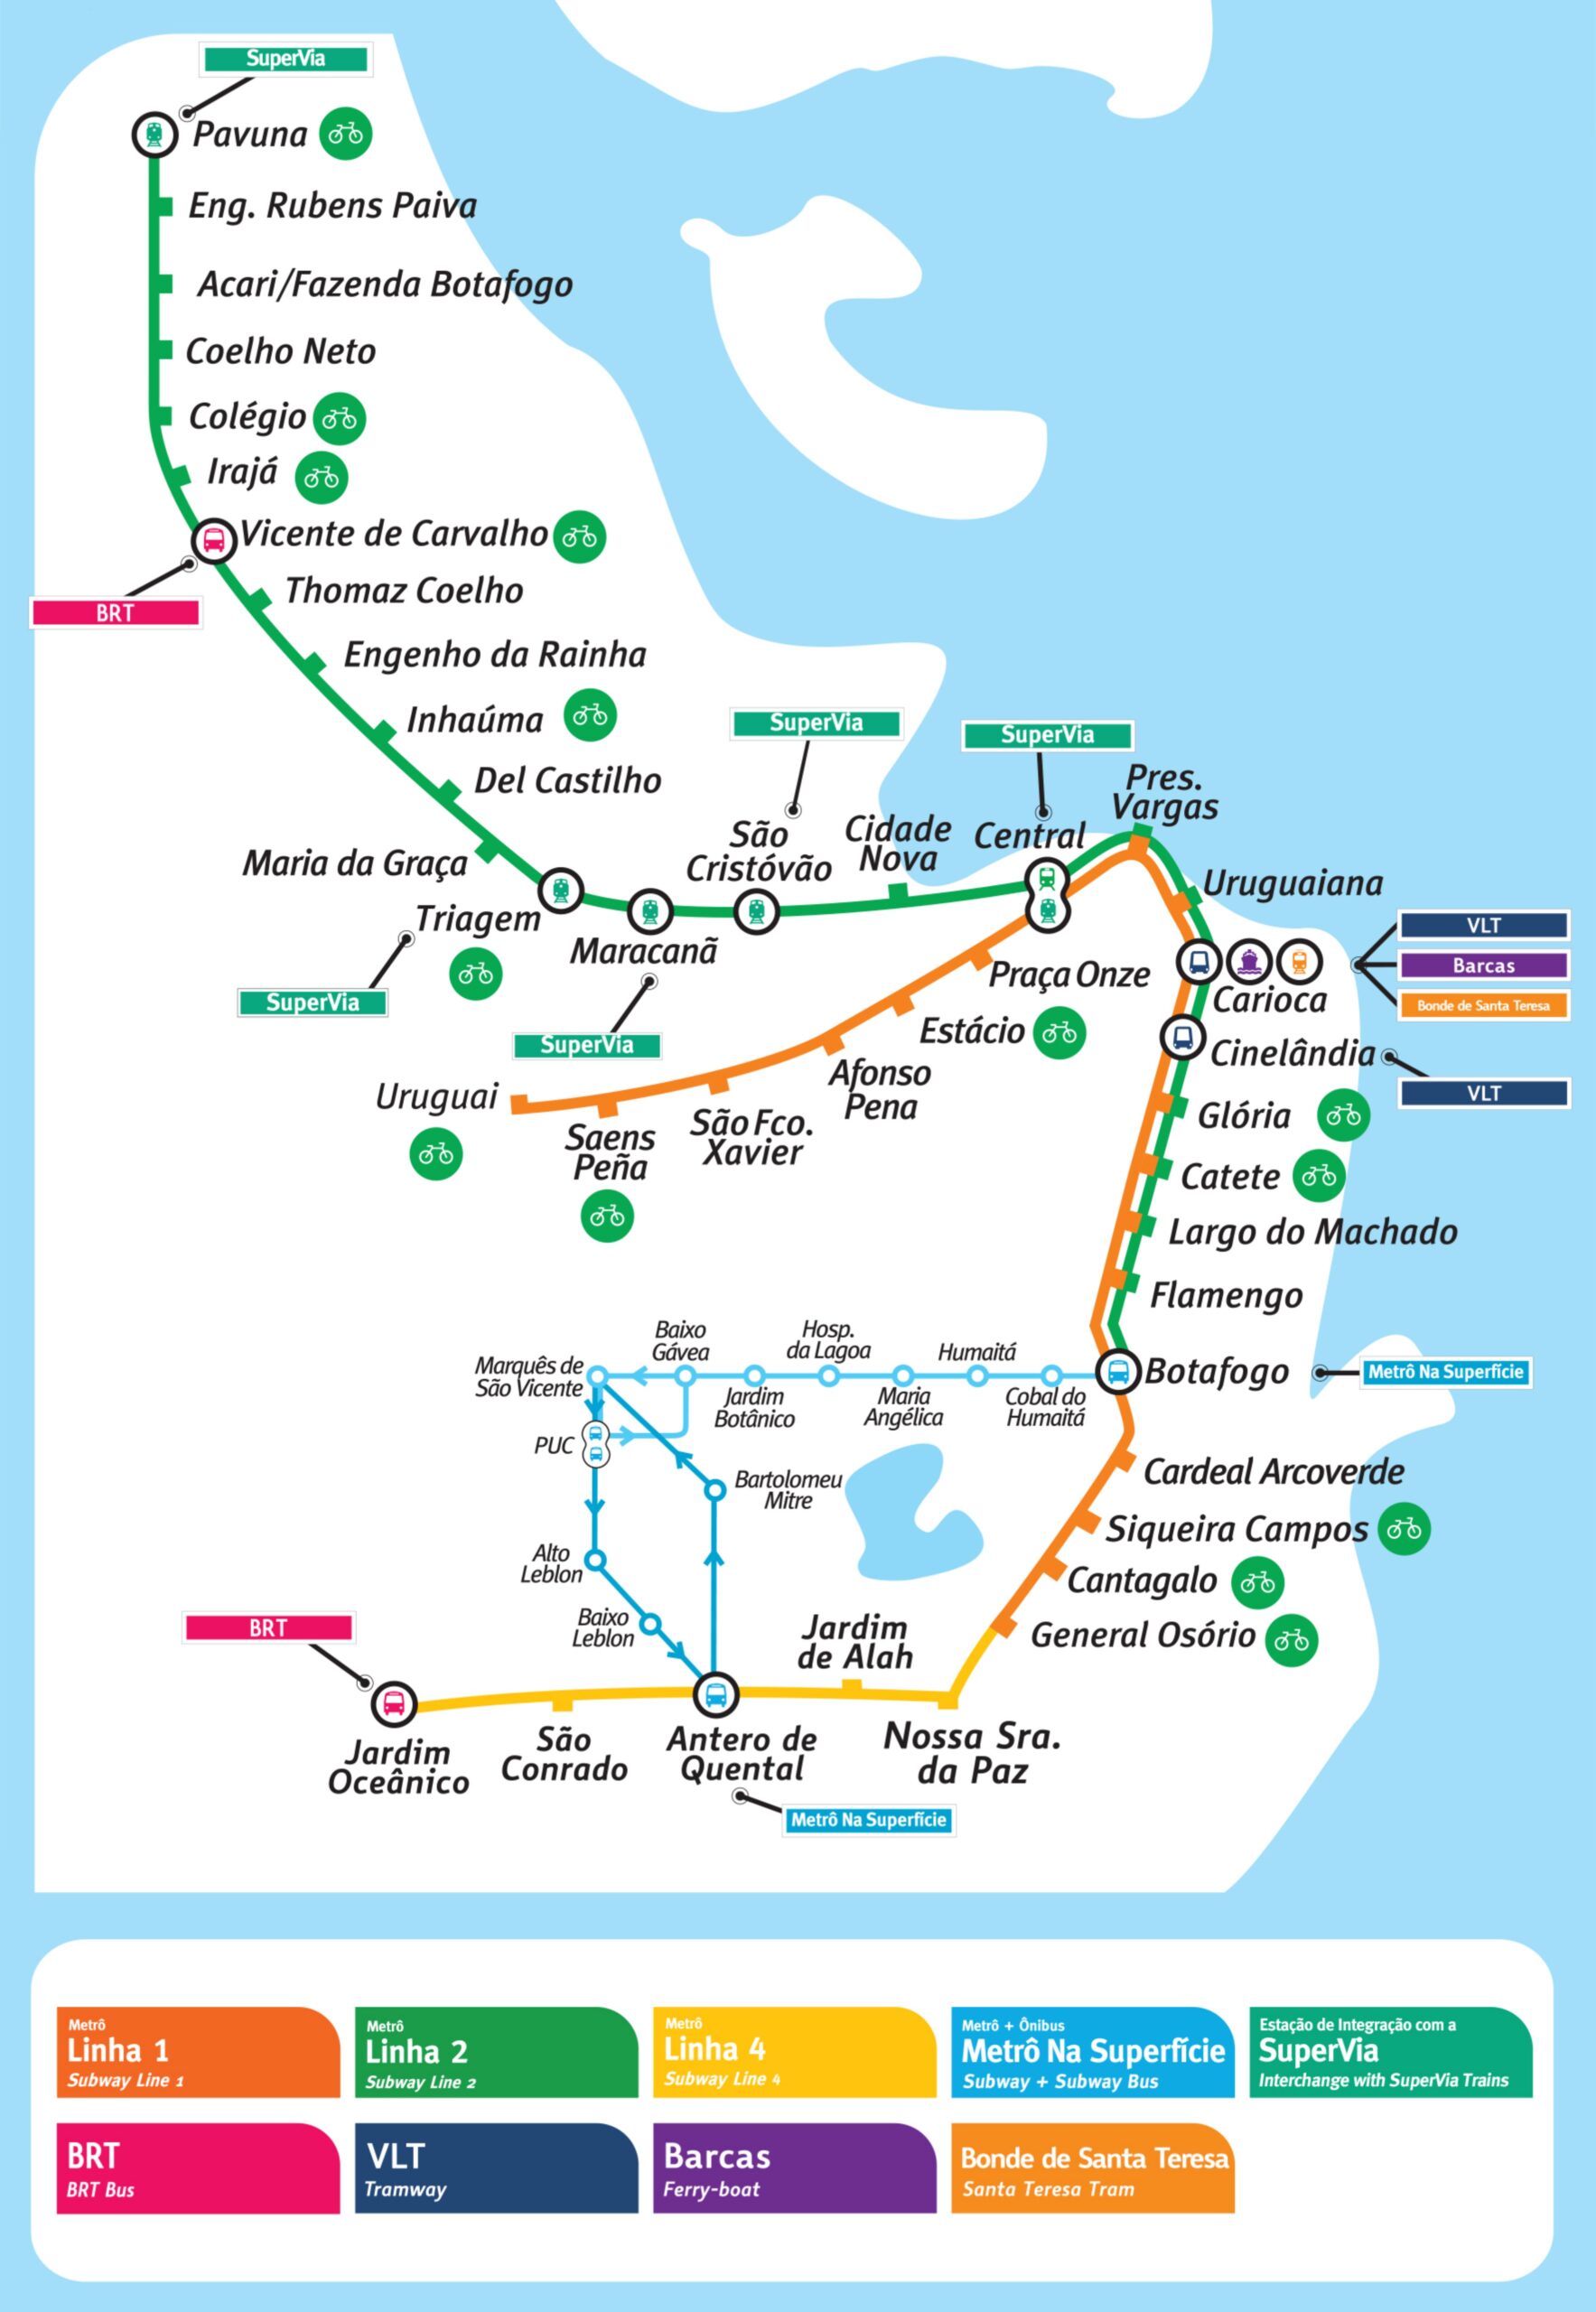 Mapa da rede de metrô e Trem do estado do Rio de Janeiro